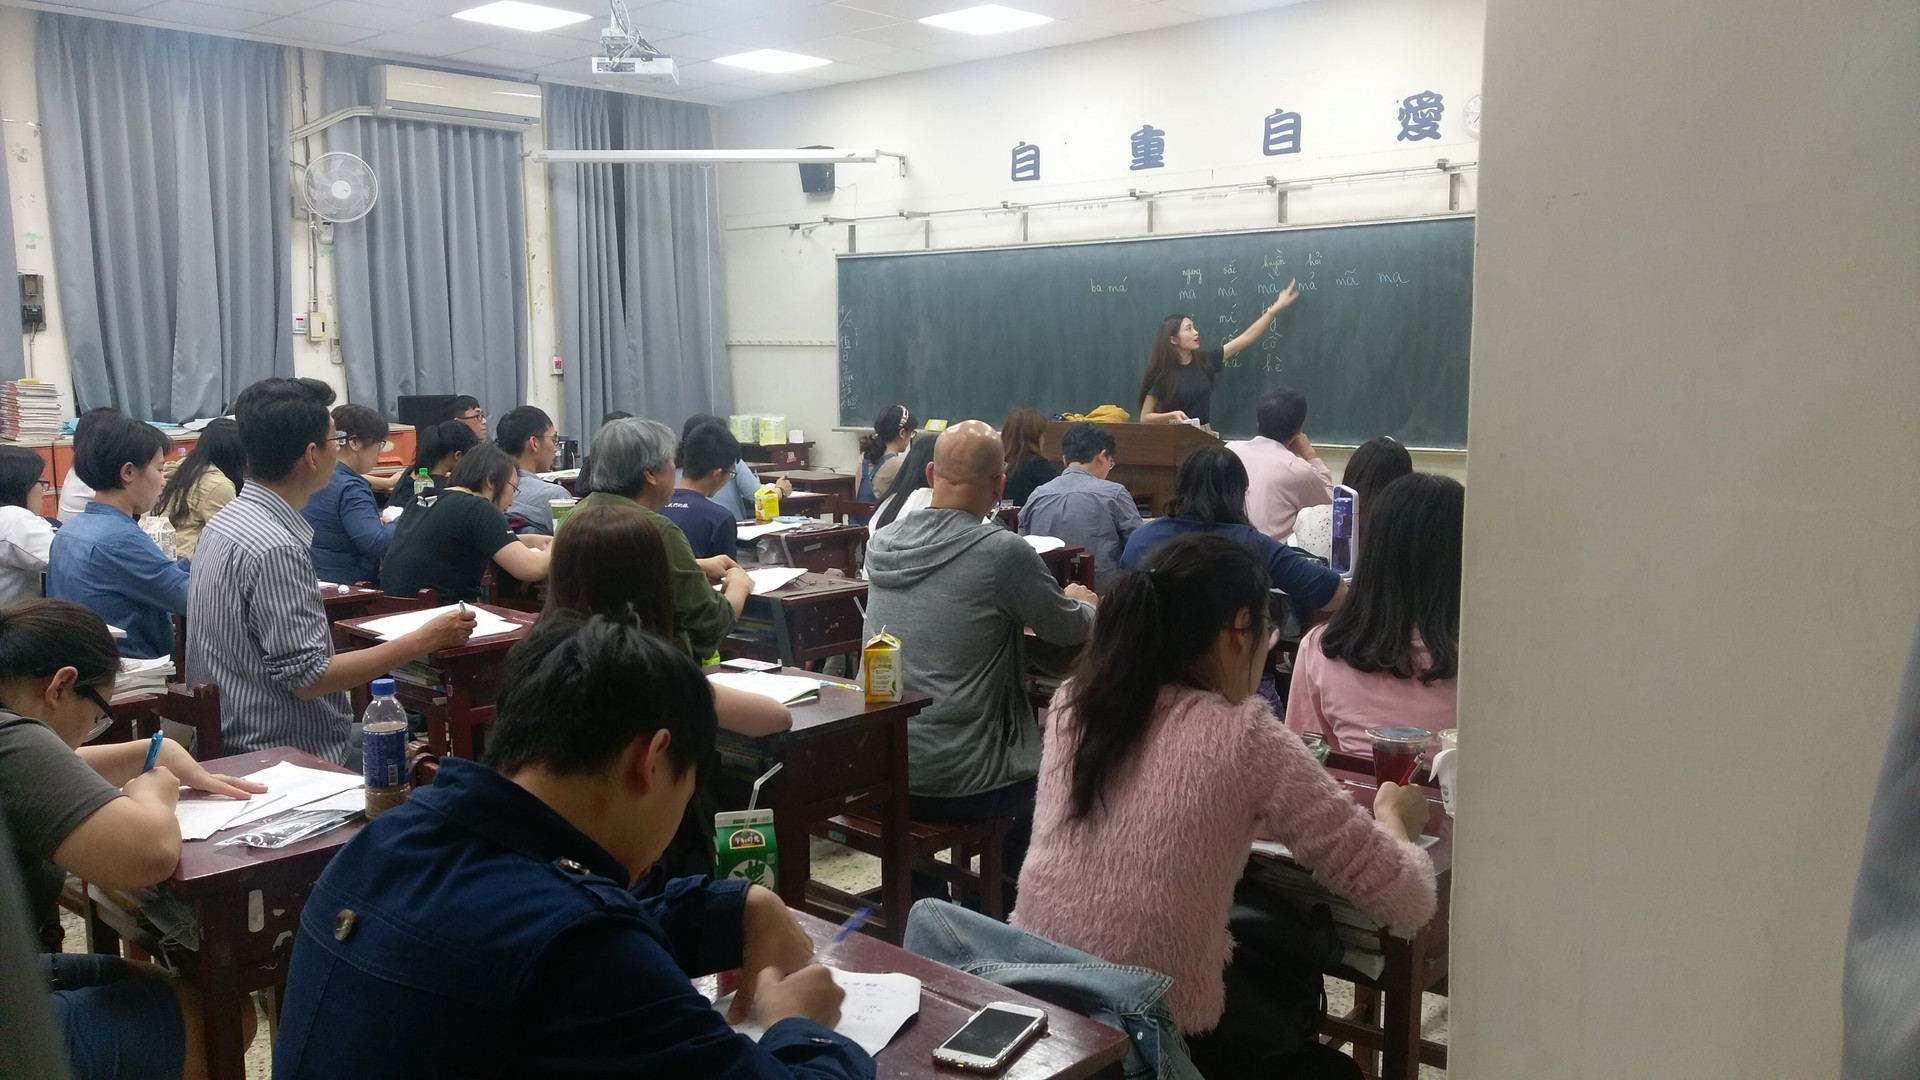 Tiết học của cô Nguyễn Thu Hằng tại một trung tâm ngôn ngữ ở Đài Bắc, Đài Loan.